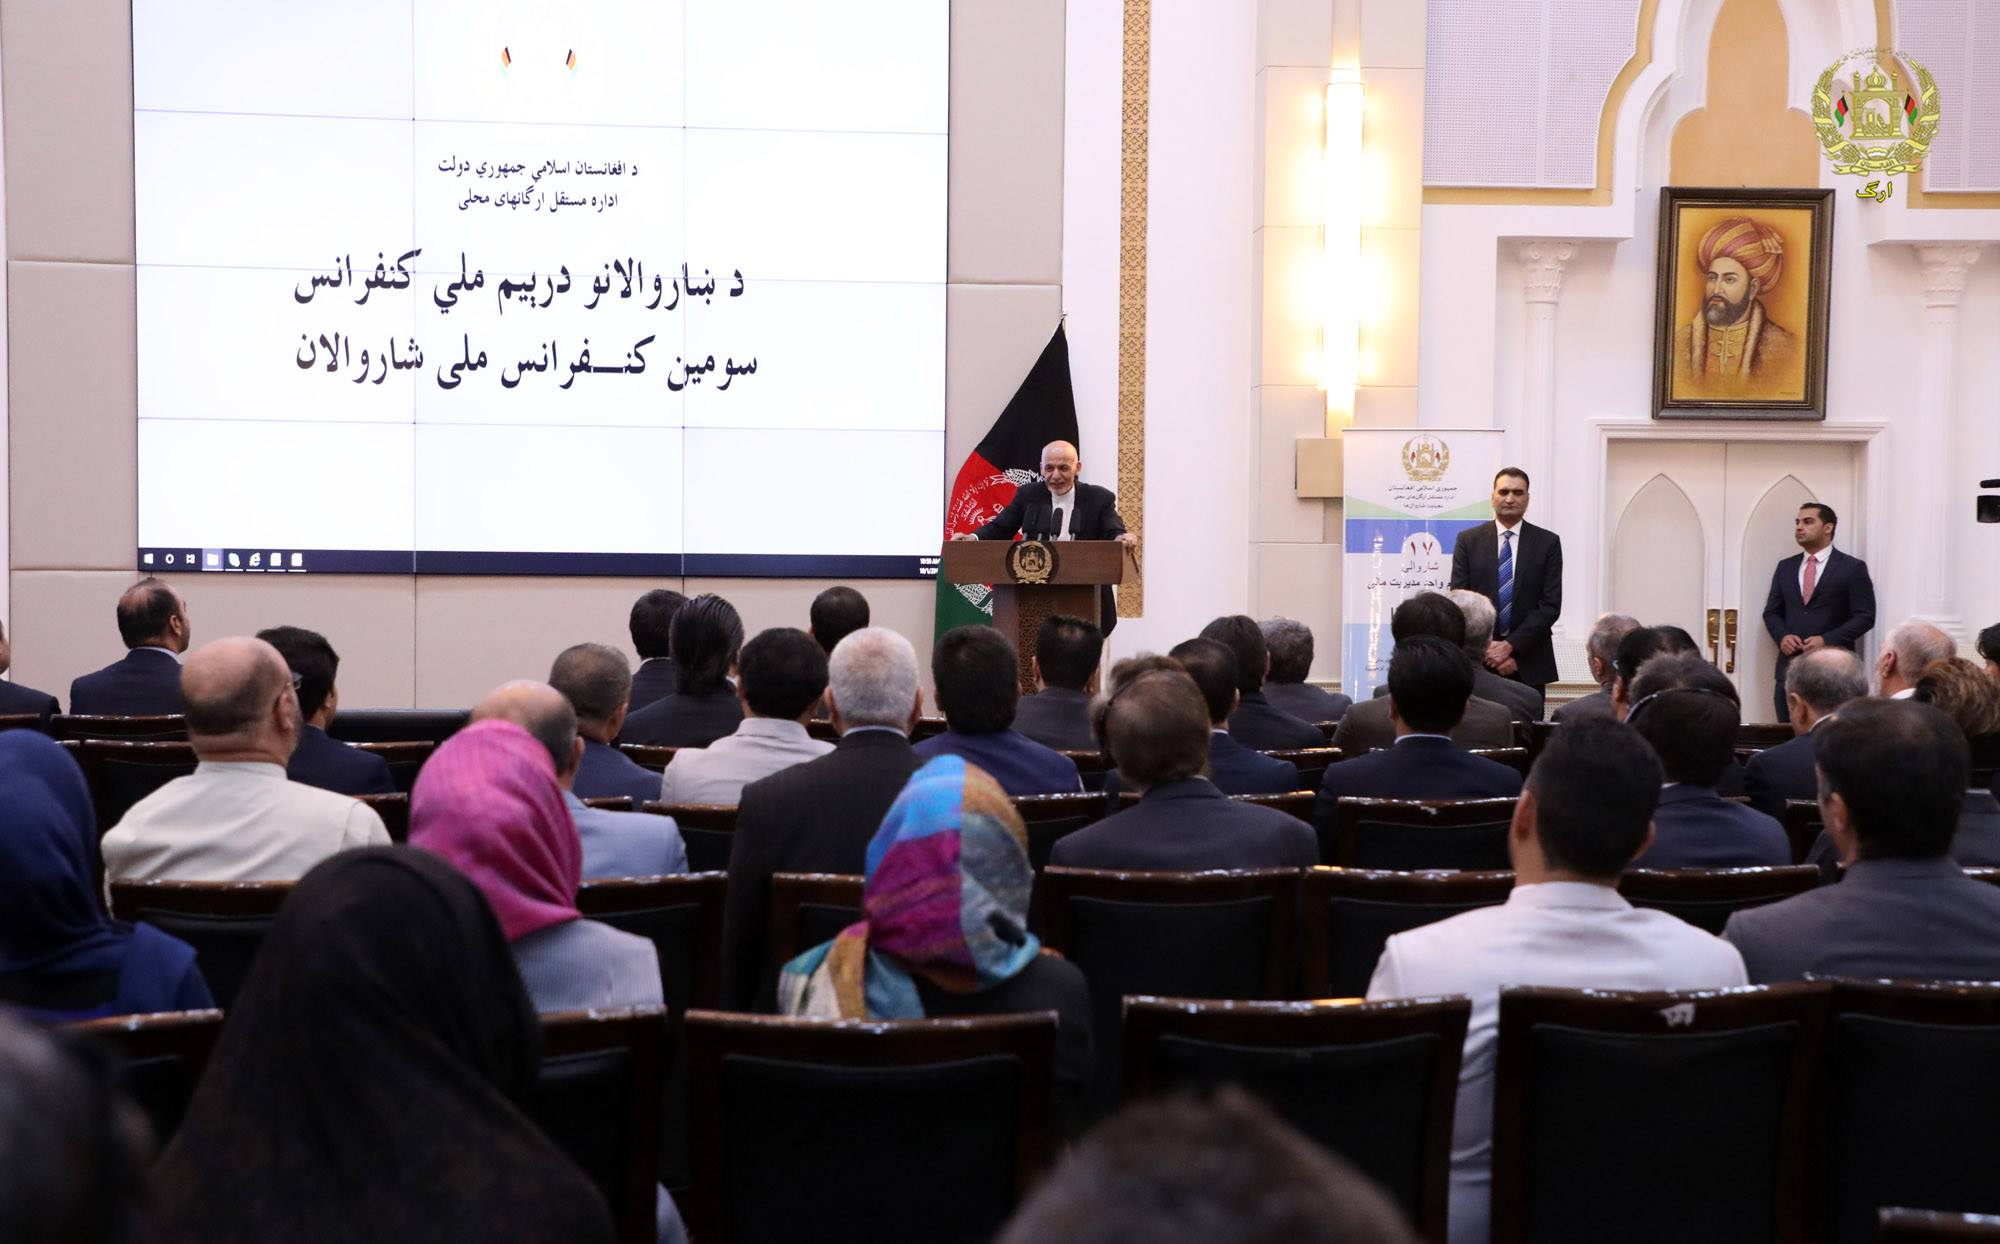 سومین نشست ملی شهرداران در کابل برگزار شد